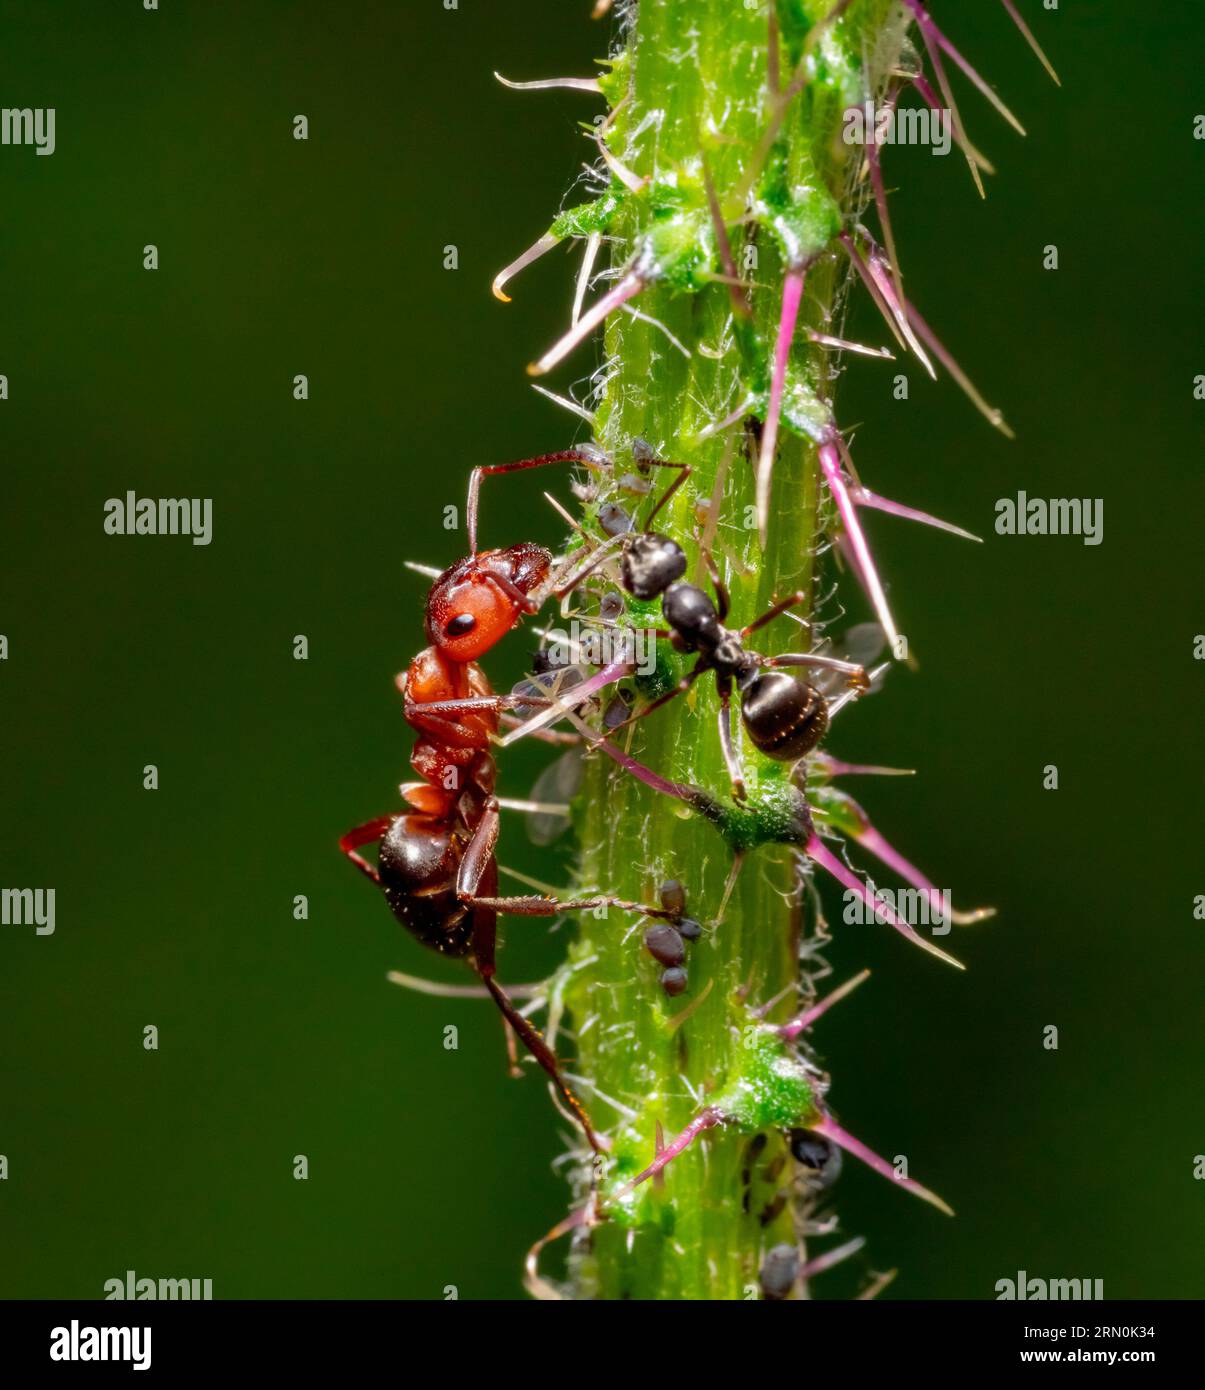 Makroaufnahme mit zwei Ameisen, die einige Blattläuse auf einem Pflanzenstiel ernähren Stockfoto